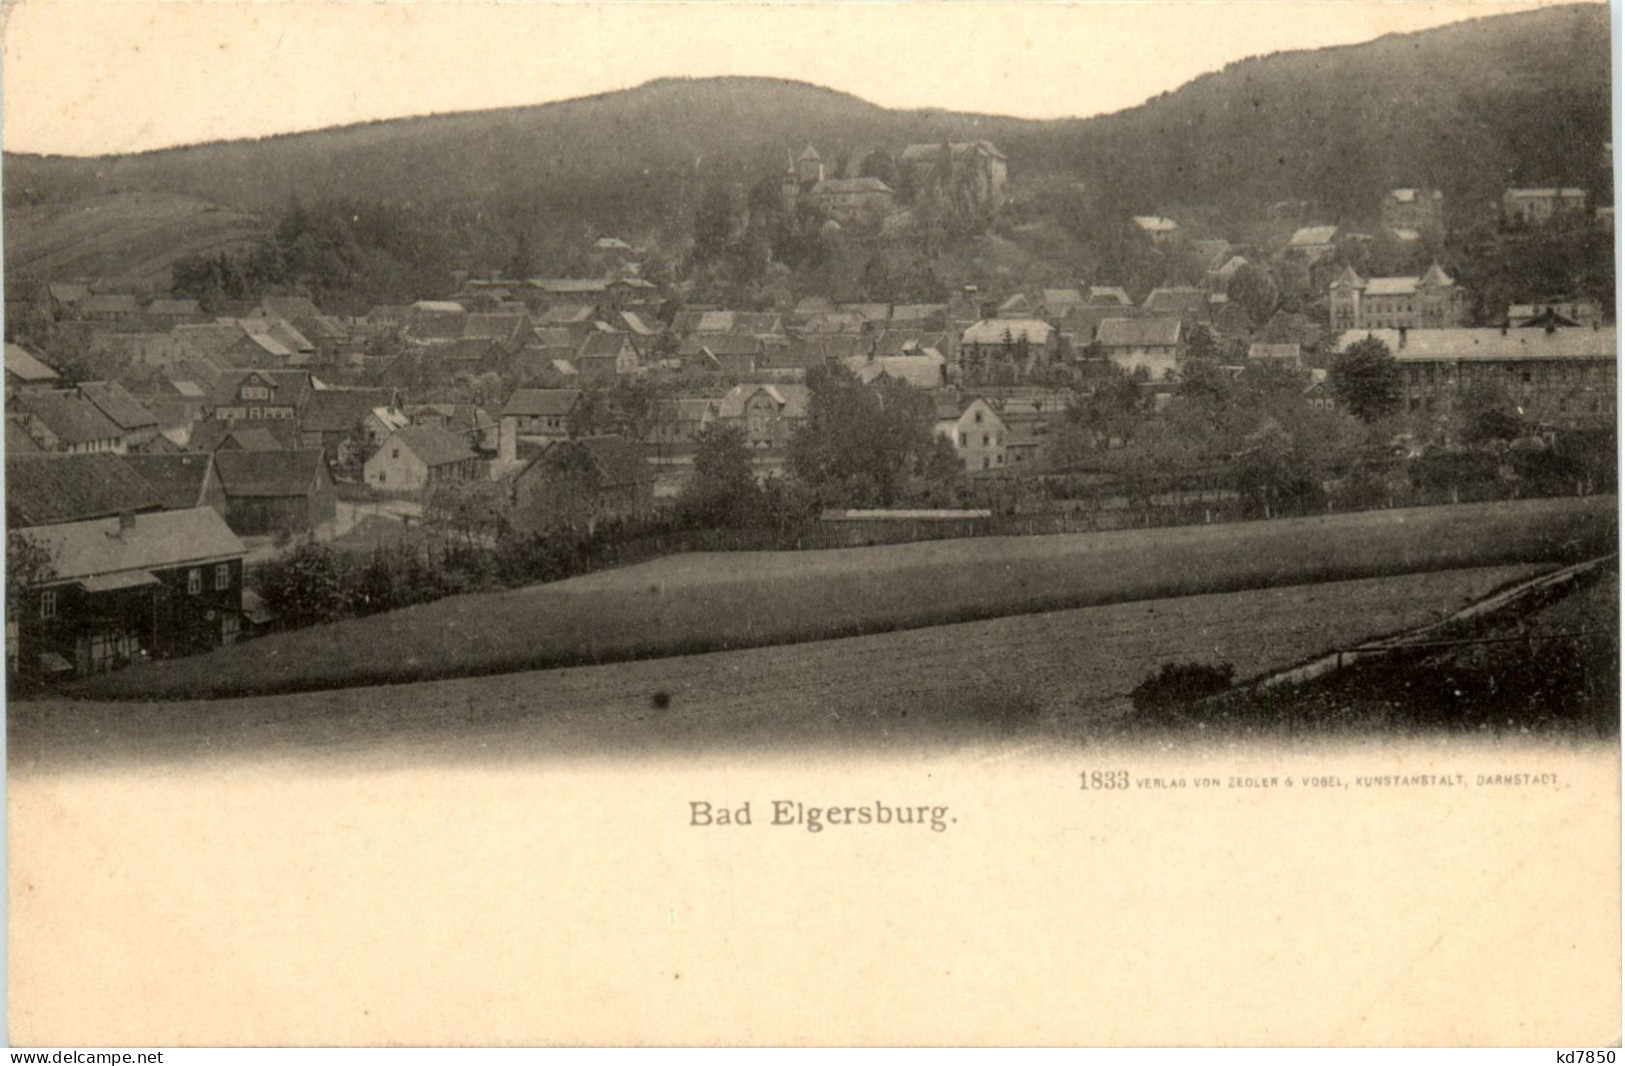 Bad Eigersburg - Ilmenau